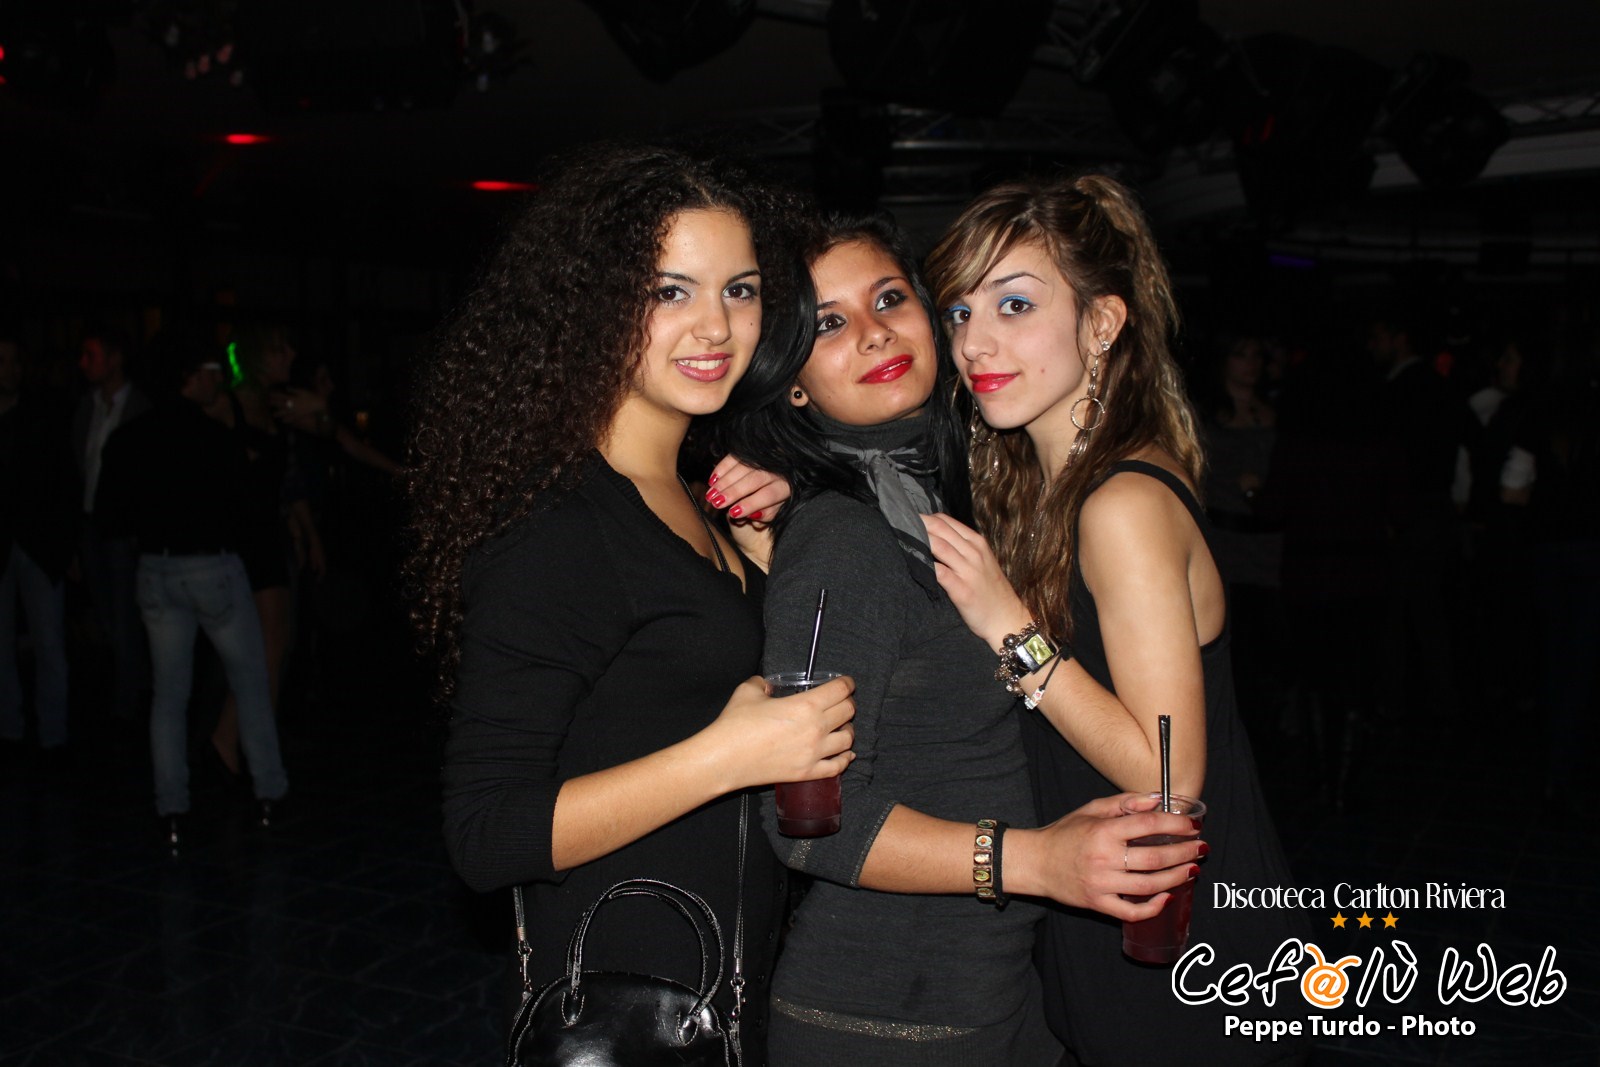 Discoteca Carlton Riviera: 1 Dicembre 2012 [Foto]